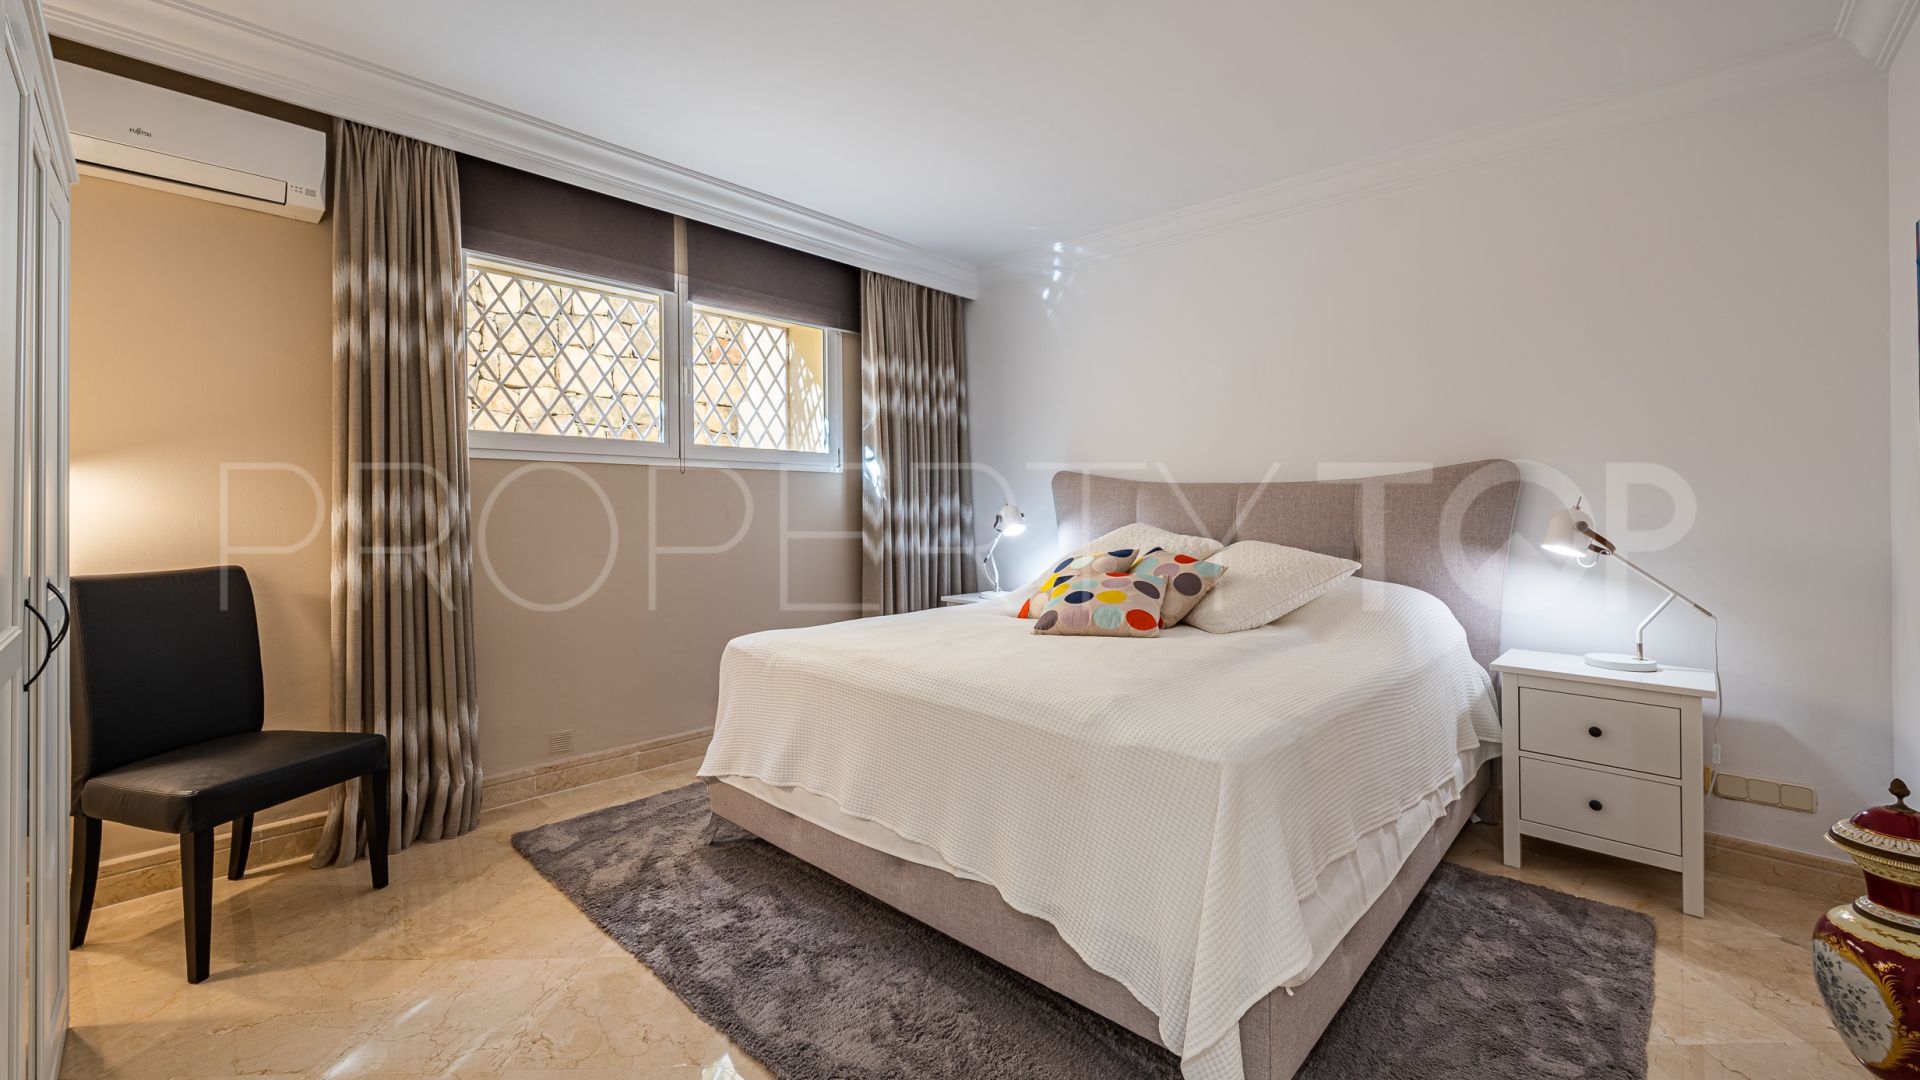 5 bedrooms villa for sale in Casablanca